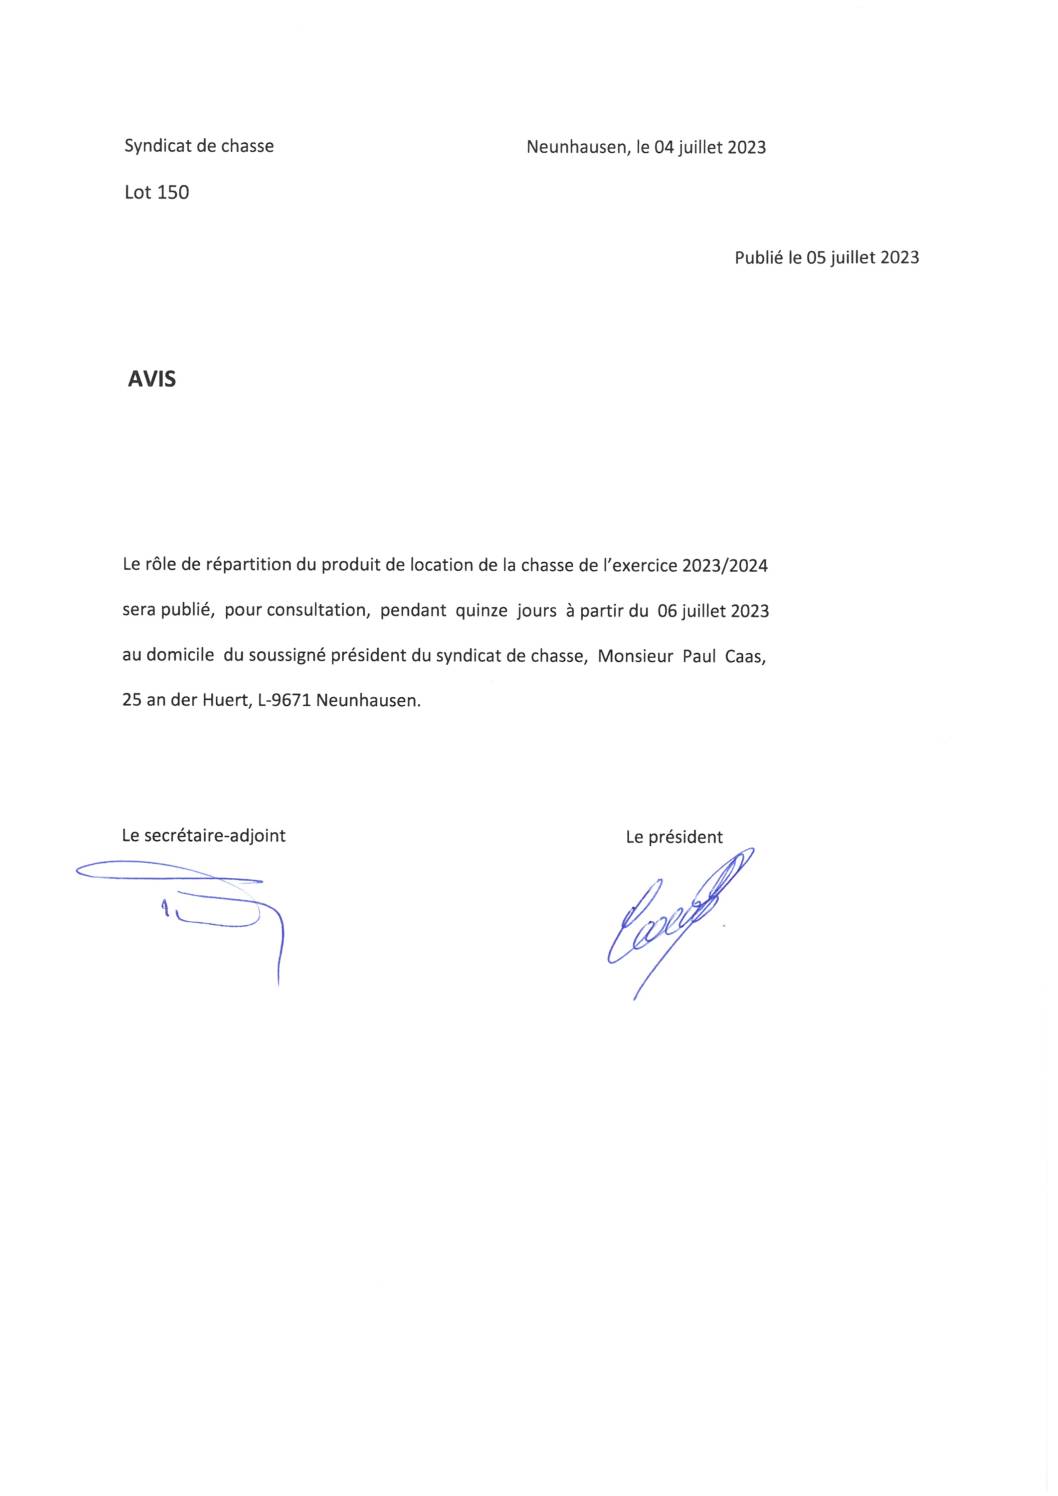 2023.07.05_Syndicat de Chasse, lot 150 - Publication des comptes 2022-2023